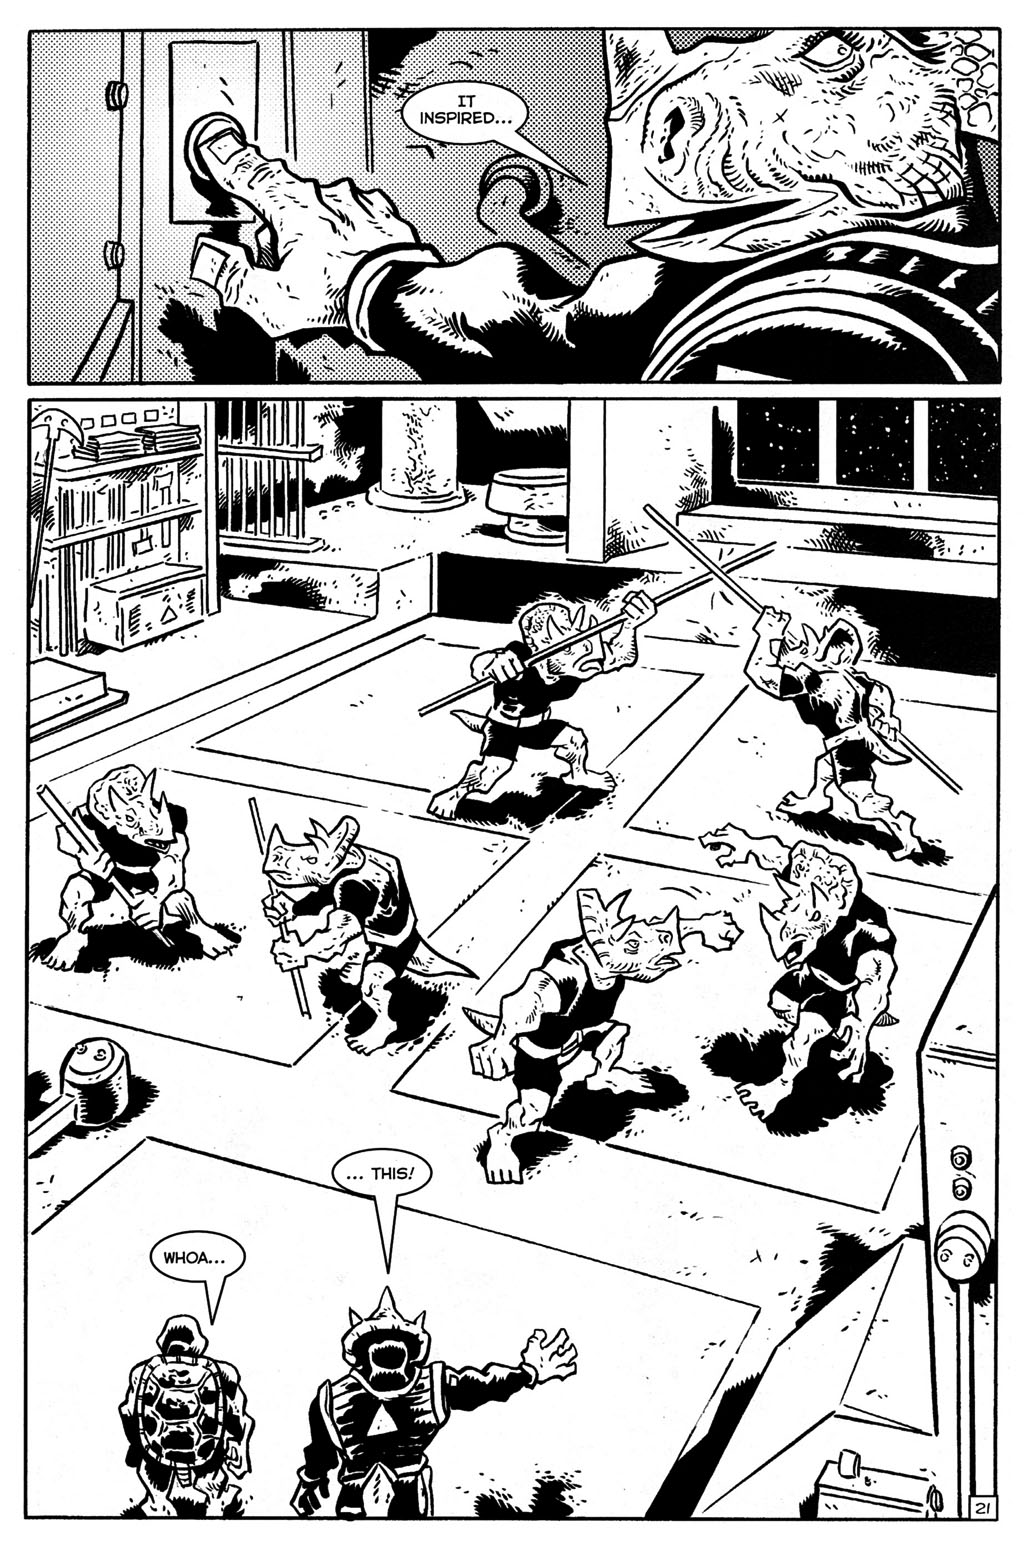 Read online TMNT: Teenage Mutant Ninja Turtles comic -  Issue #28 - 22